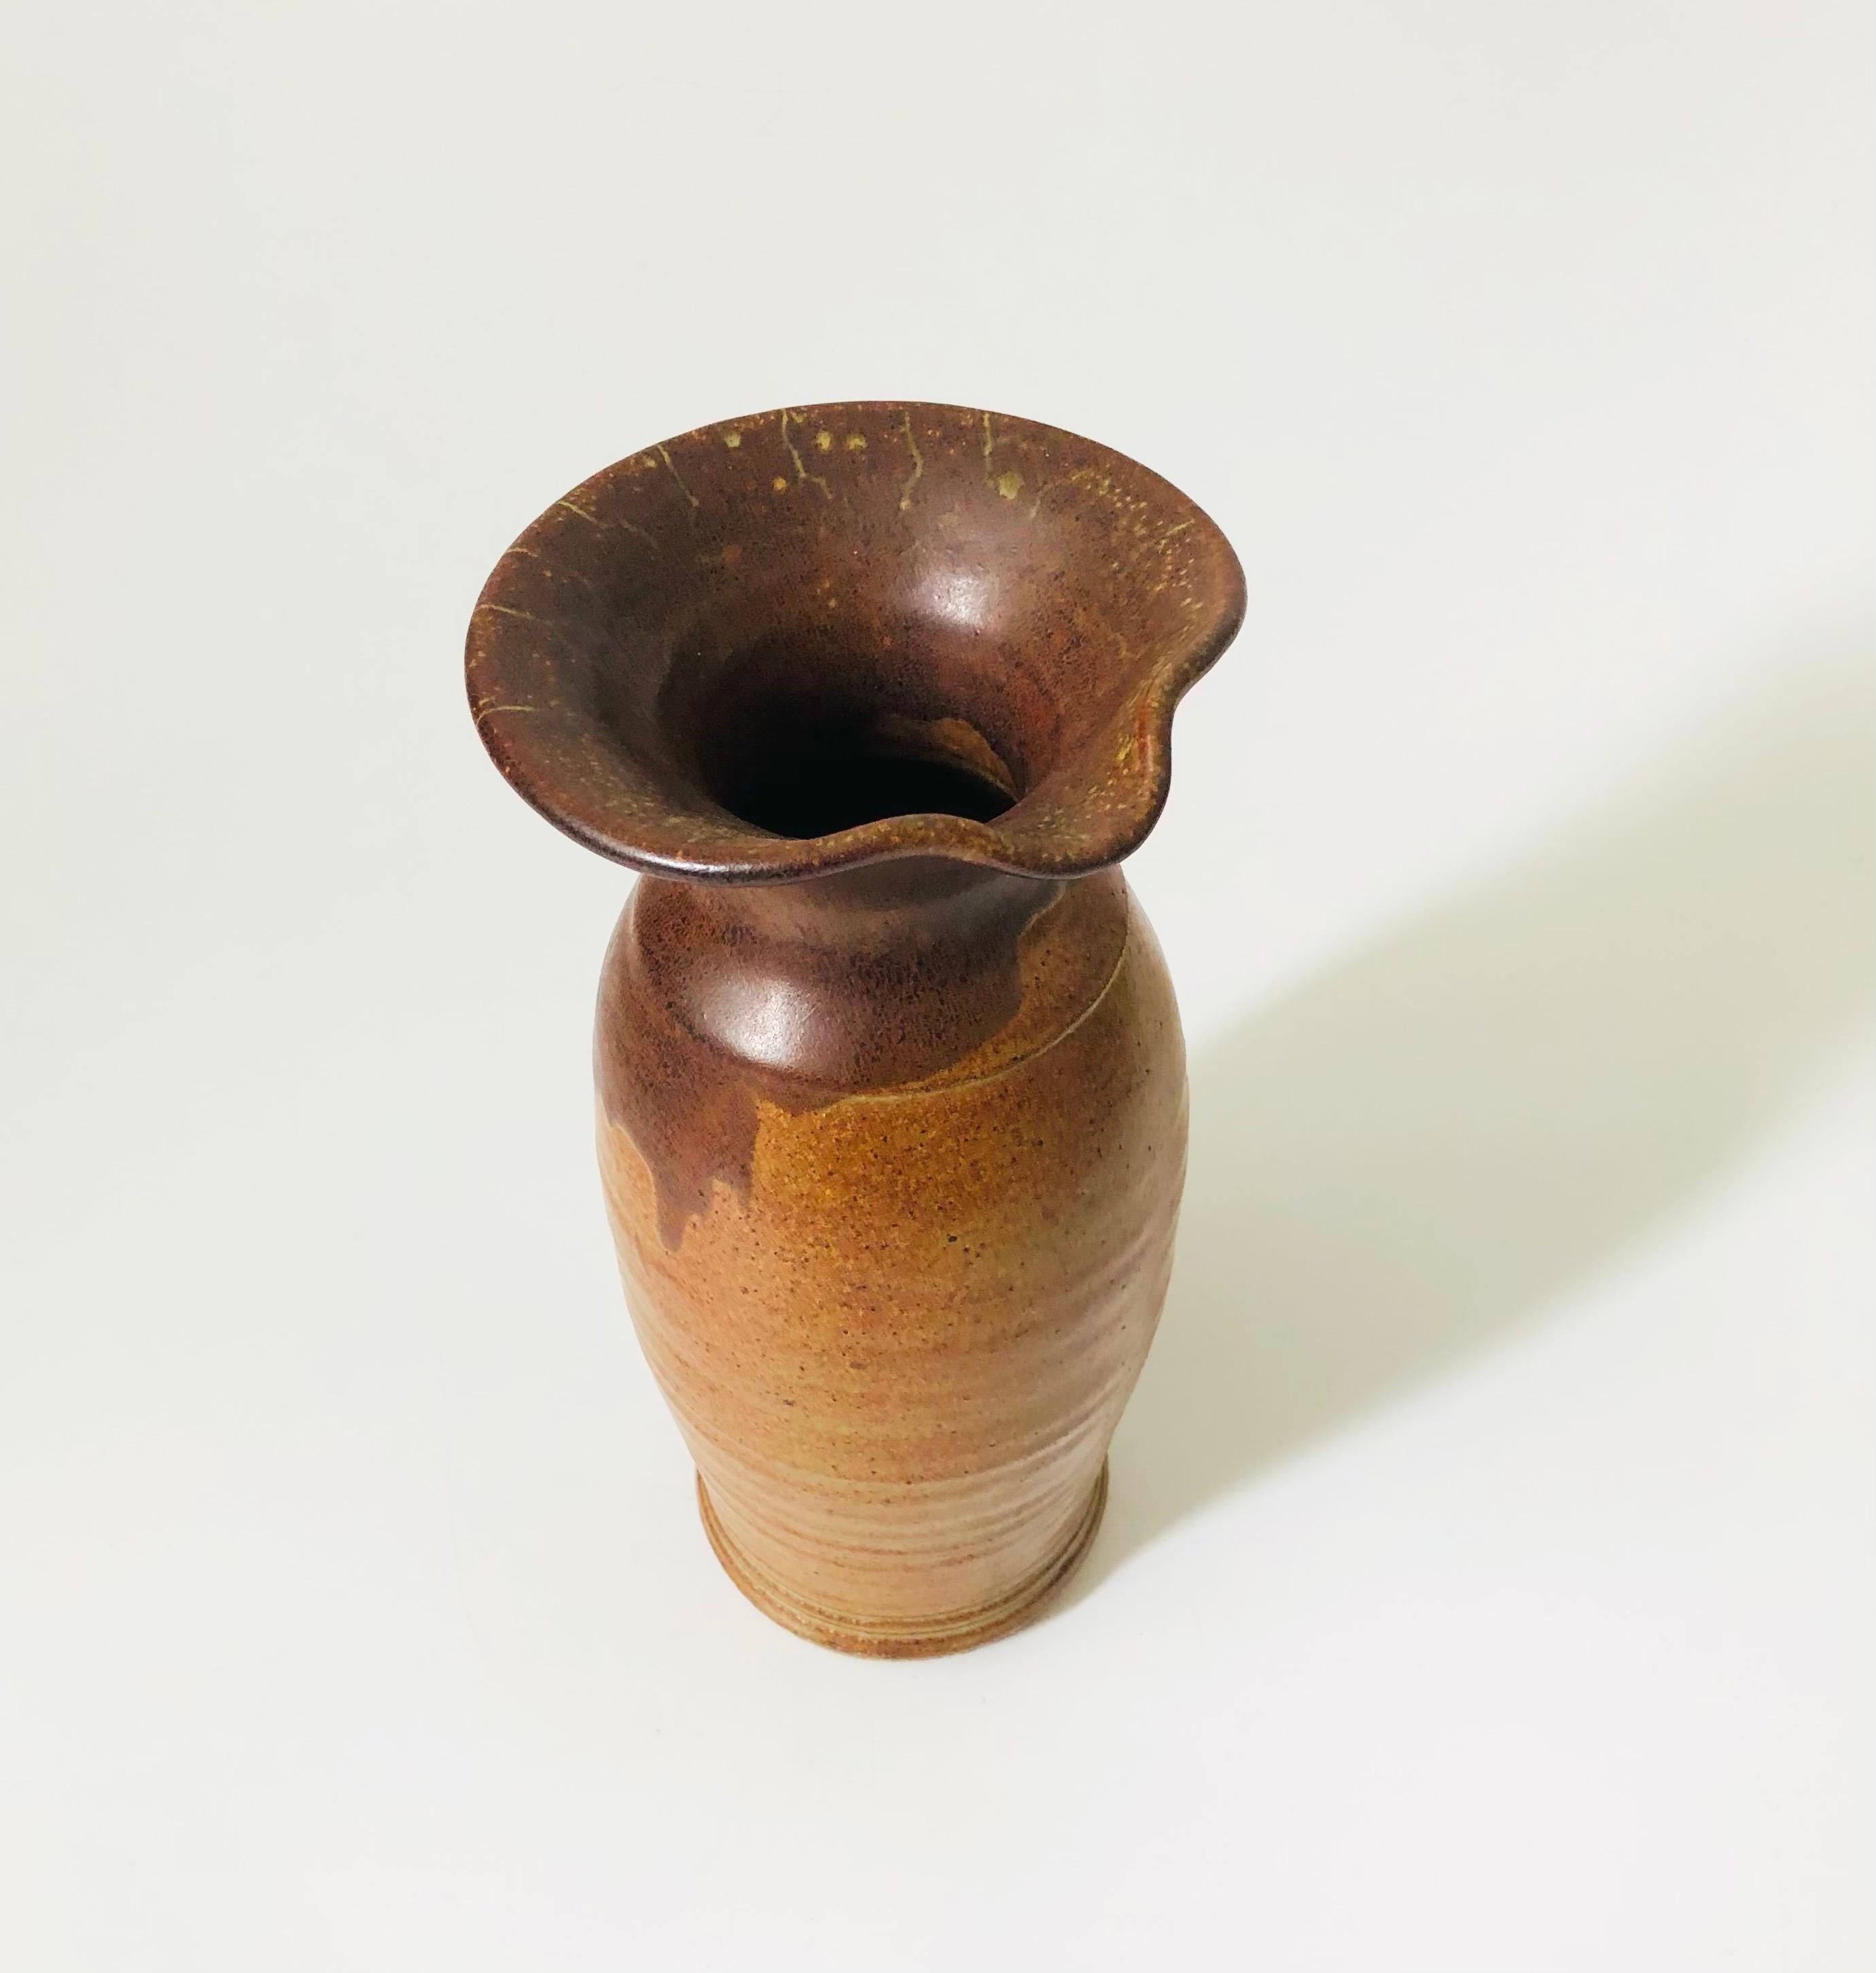 Un grand vase-pichet vintage en poterie de studio. Émaux à deux tons de brun terreux. Un bec a été formé sur un côté de l'ouverture.

